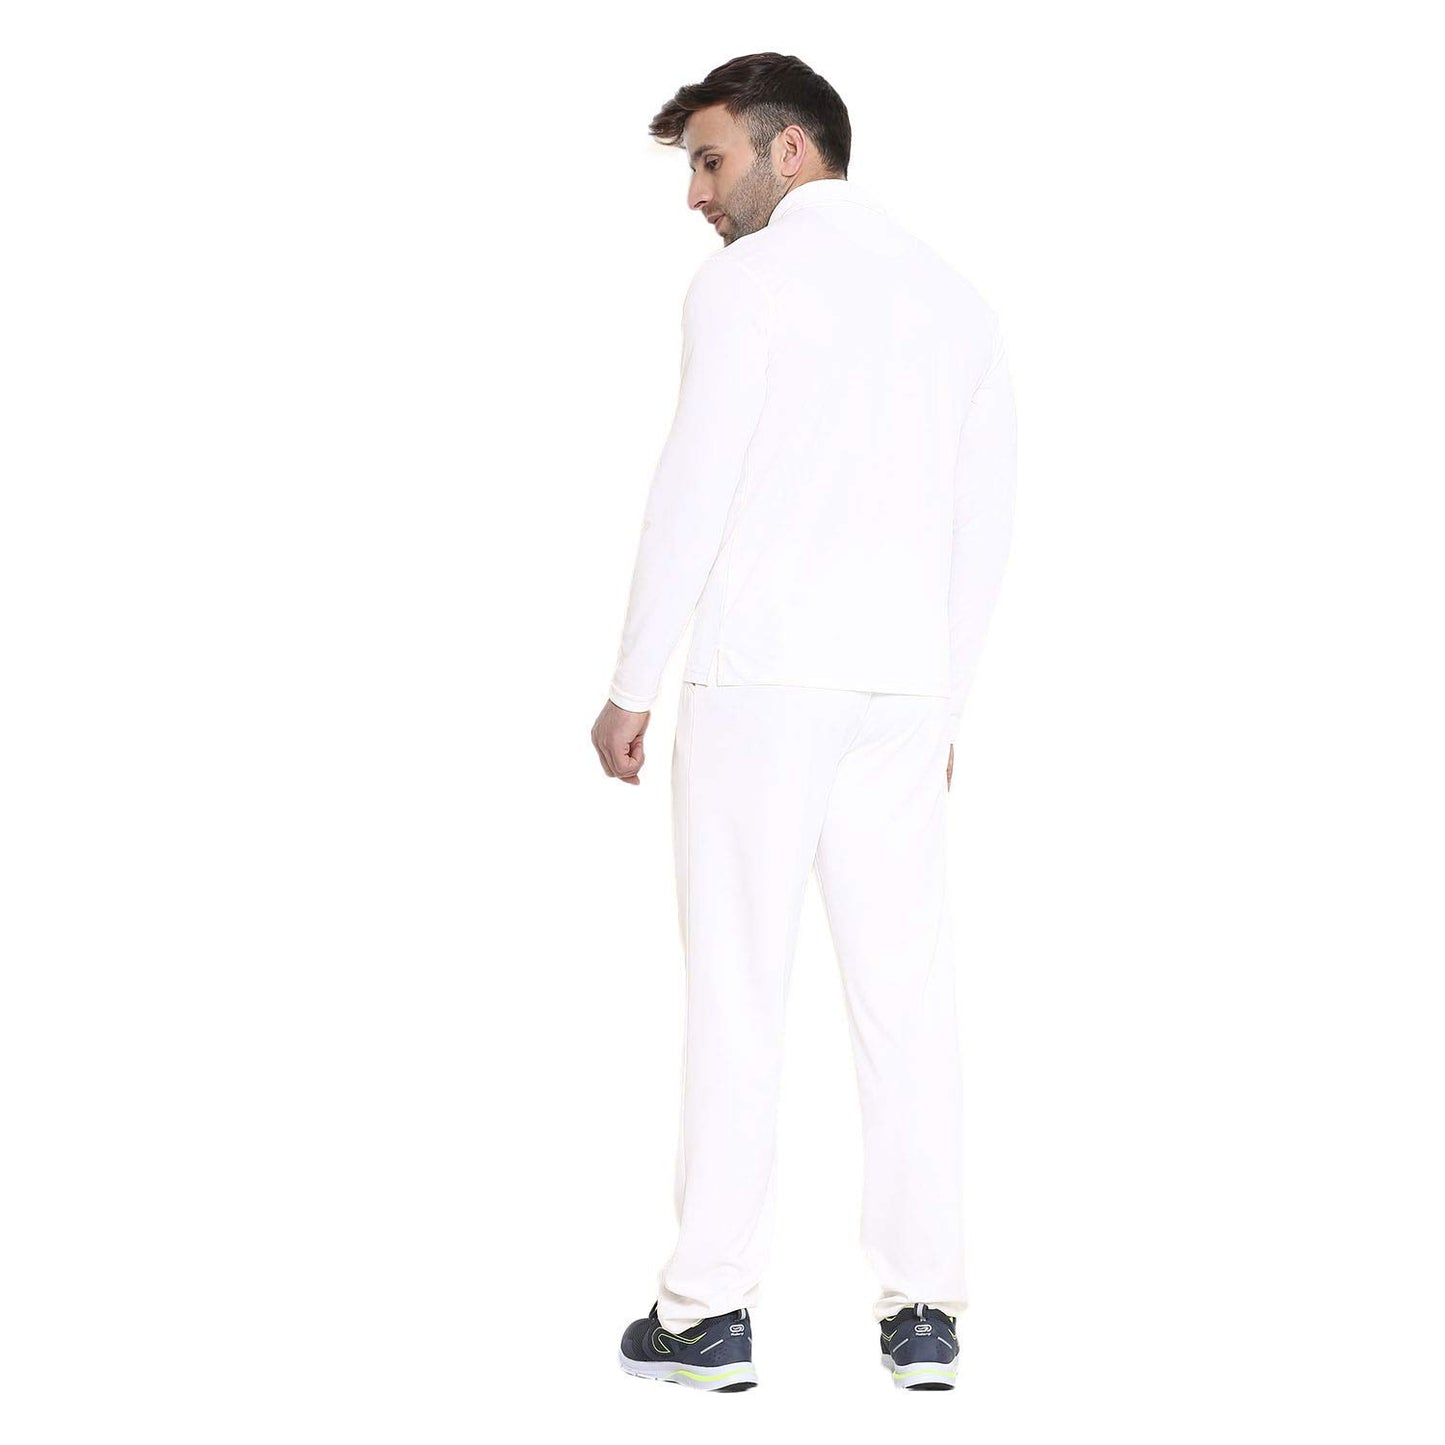 White Cricket Dress Full Sleeve For Men